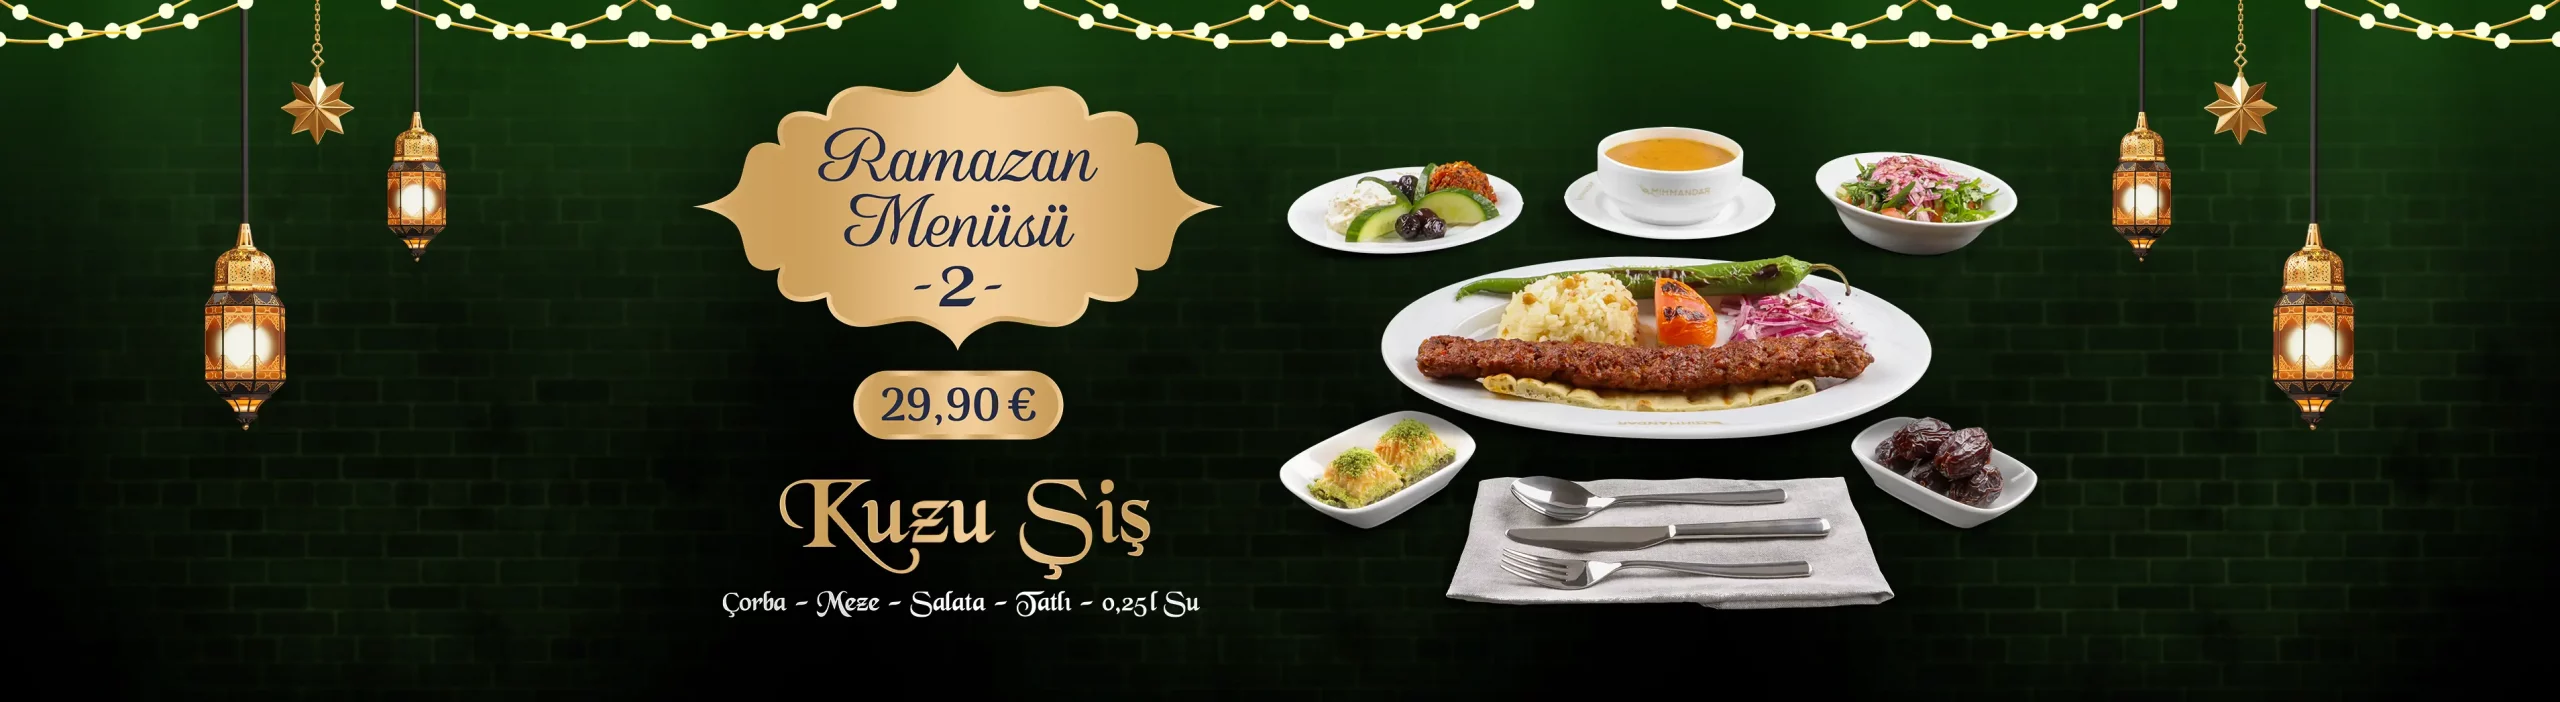 slider-ramazan-menu-2a